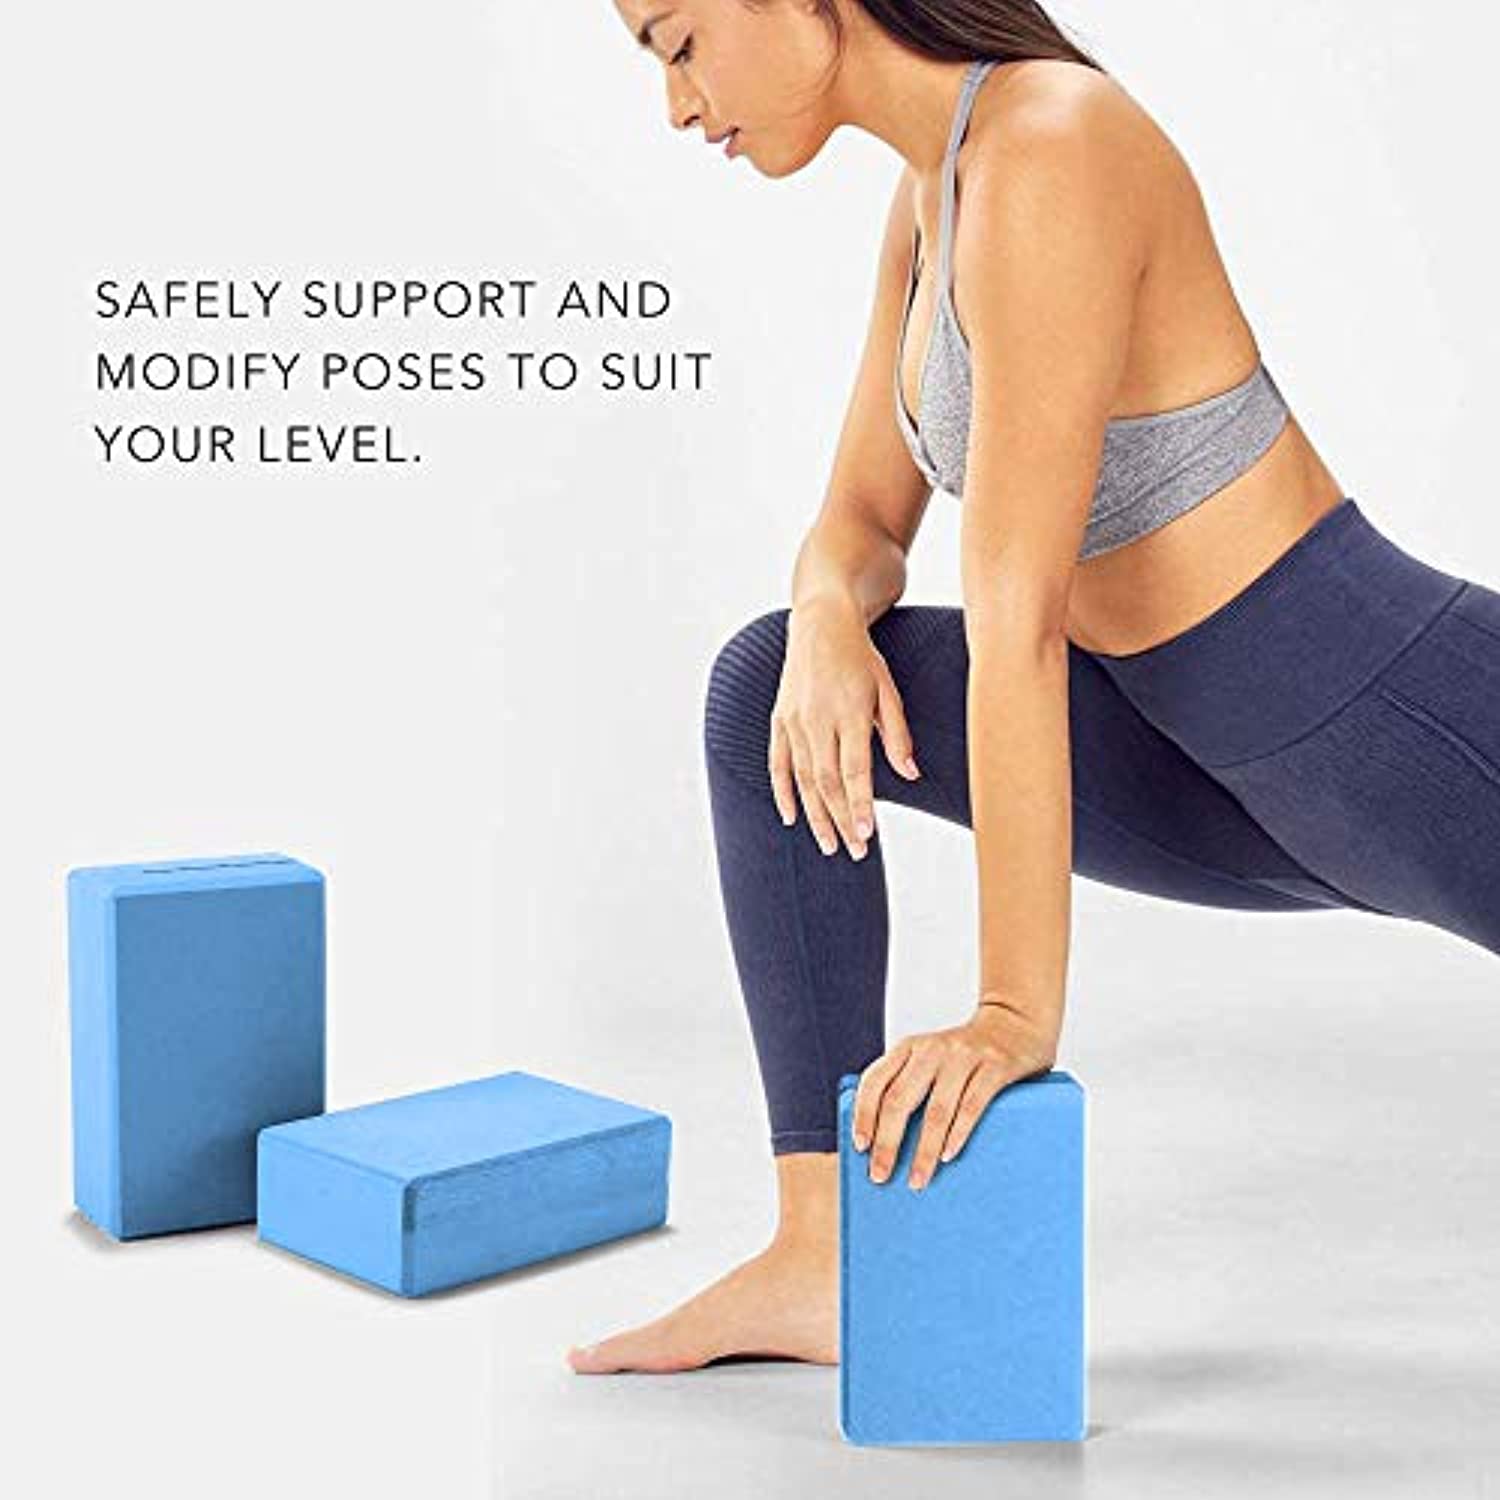  Gaiam Essentials Bloque de yoga (juego de 2) – Bloques de  espuma de apoyo – Superficie suave antideslizante para yoga, pilates,  meditación – Bordes biselados de fácil agarre – Ayuda con